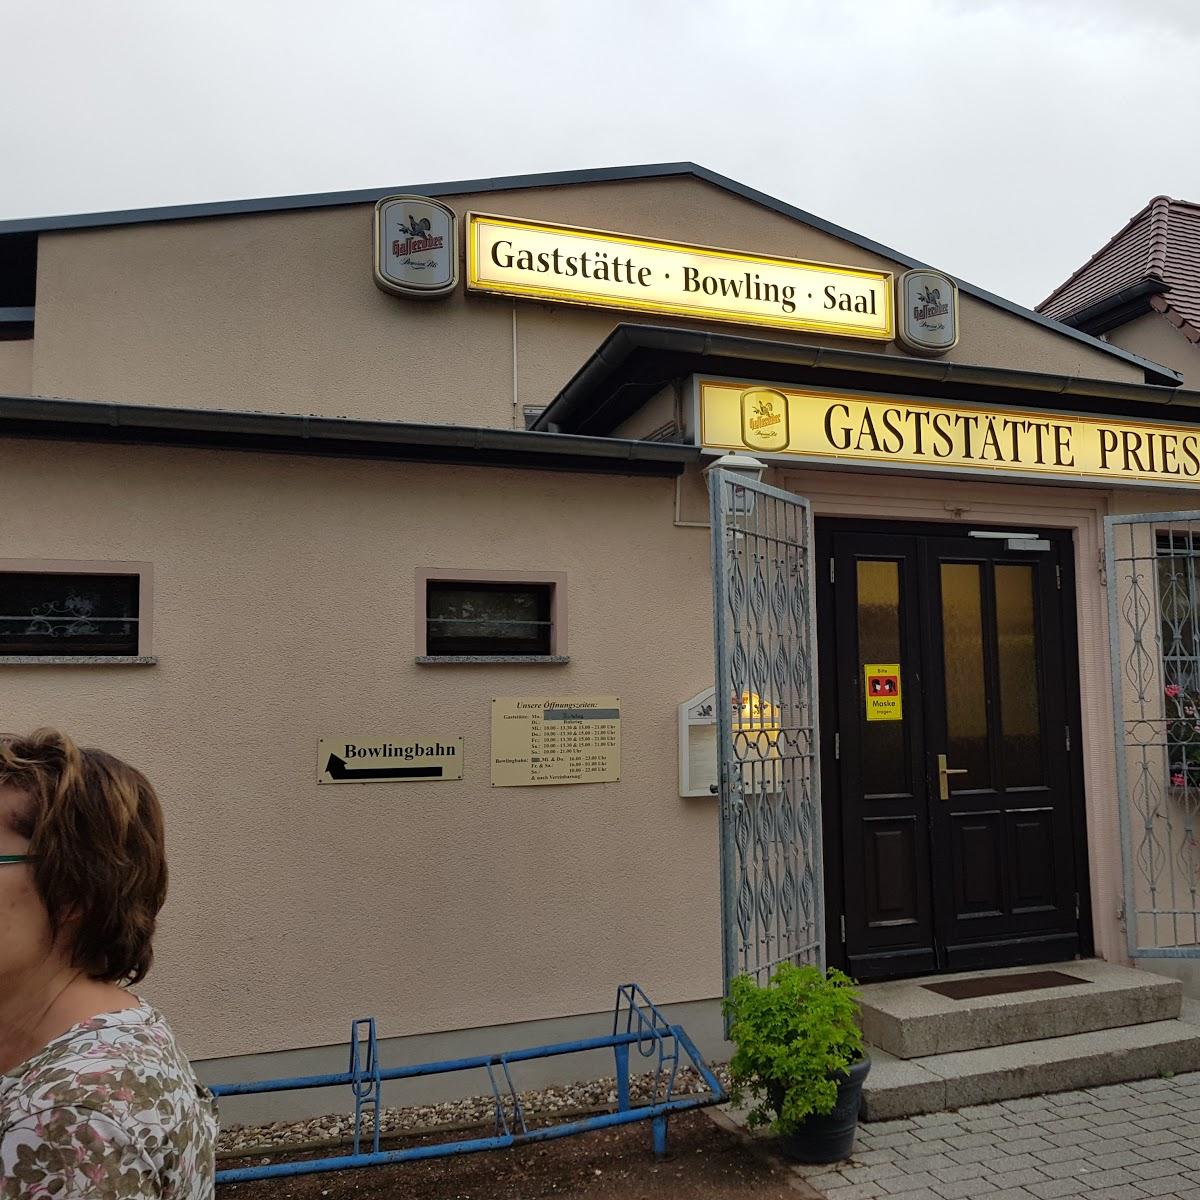 Restaurant "Gaststätte Bowlingbahn Partyservice Priesdorf" in Zörbig